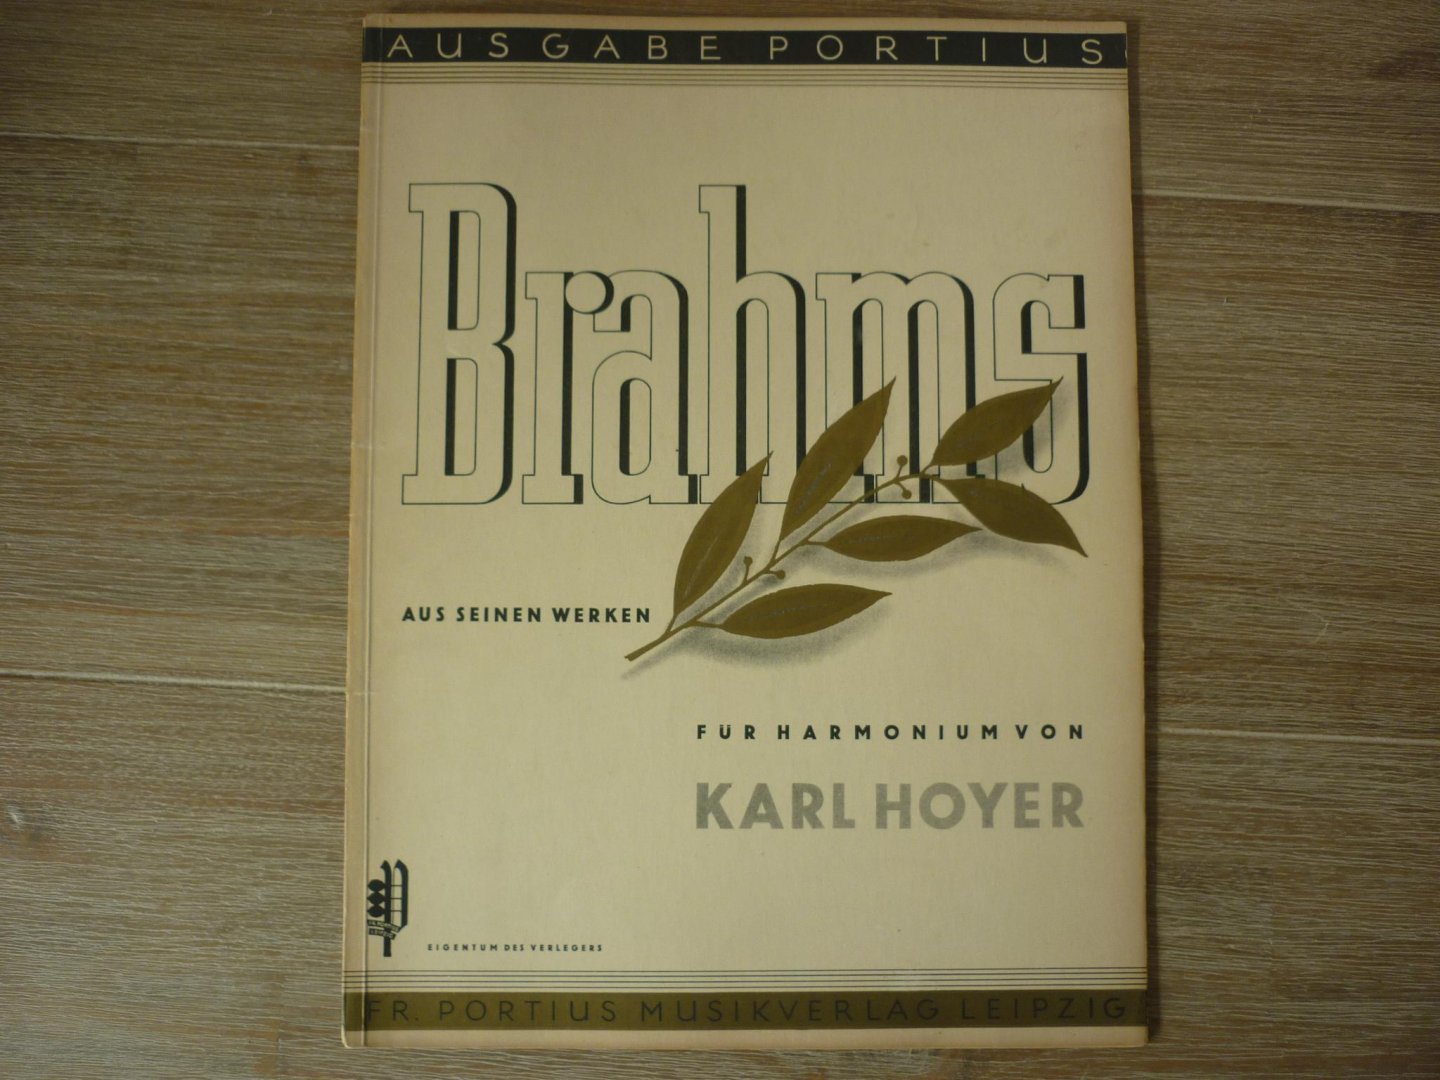 Brahms; Johannes (1833 – 1897) - Aus seinen werken für harmonium von Karl Hoyer - Ausgabe Portius (1934)